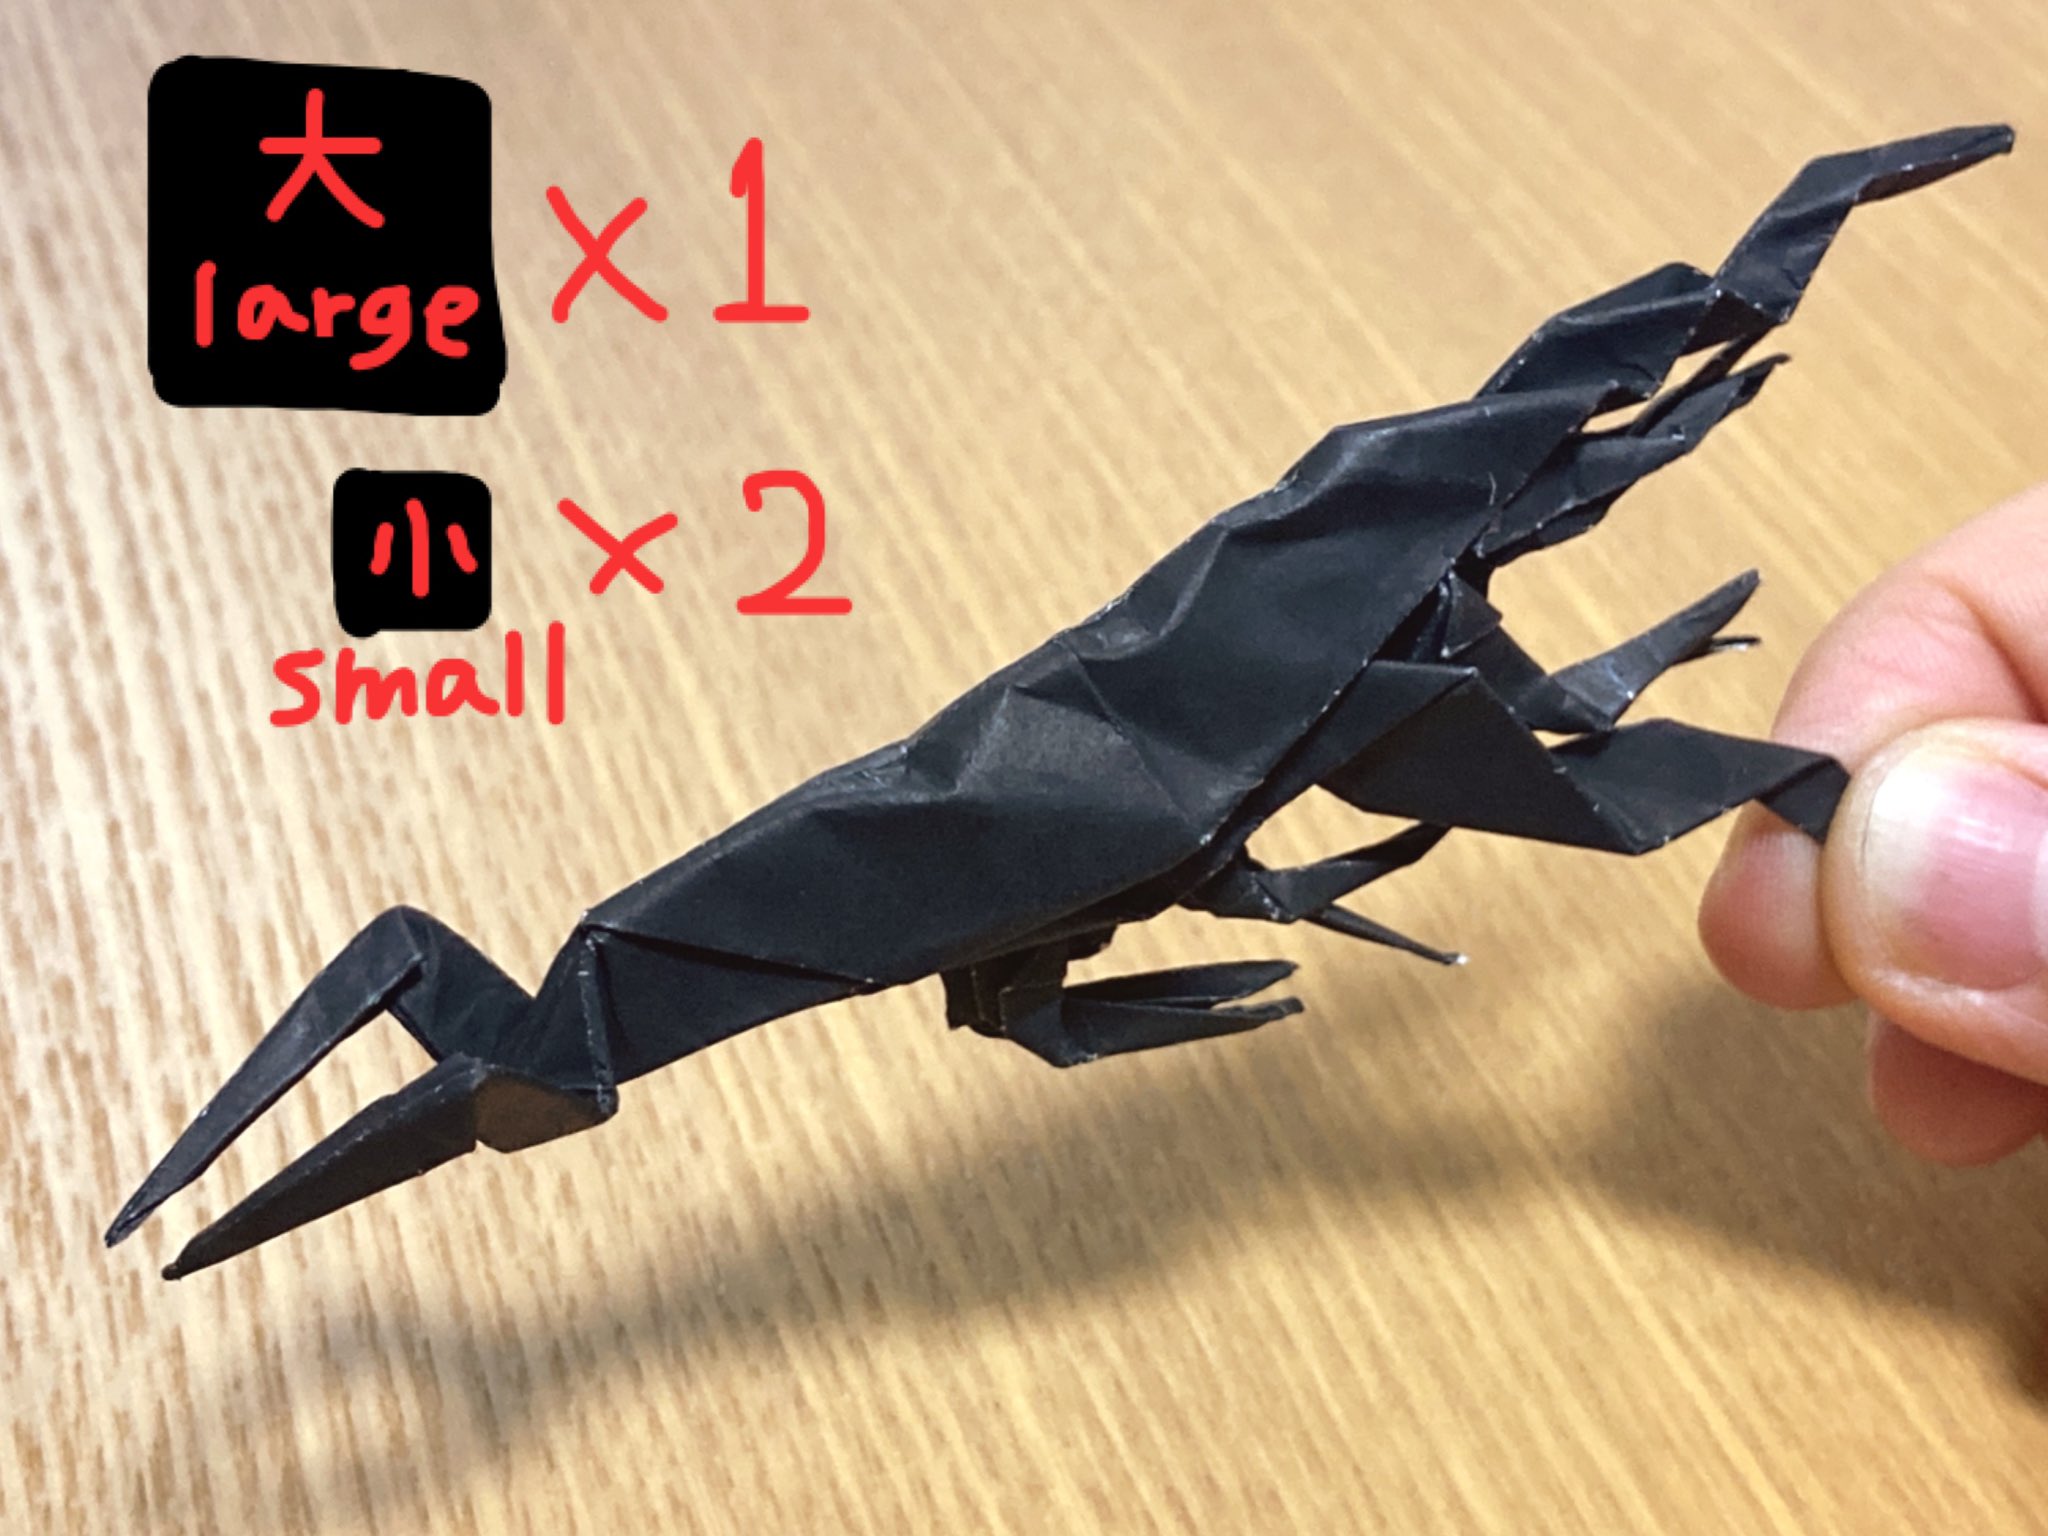 ベガ 漫画系雑多創作アカ 折り紙の暗黒竜もといエビちゃんリベンジ 本当は紙1枚で足を生やしたかったのですが私には無理 と諦めて小さい紙2枚分ジョイントしました カニさんはイラ子さんのレシピです Origami Krill Origami Wasteland Thatskygame